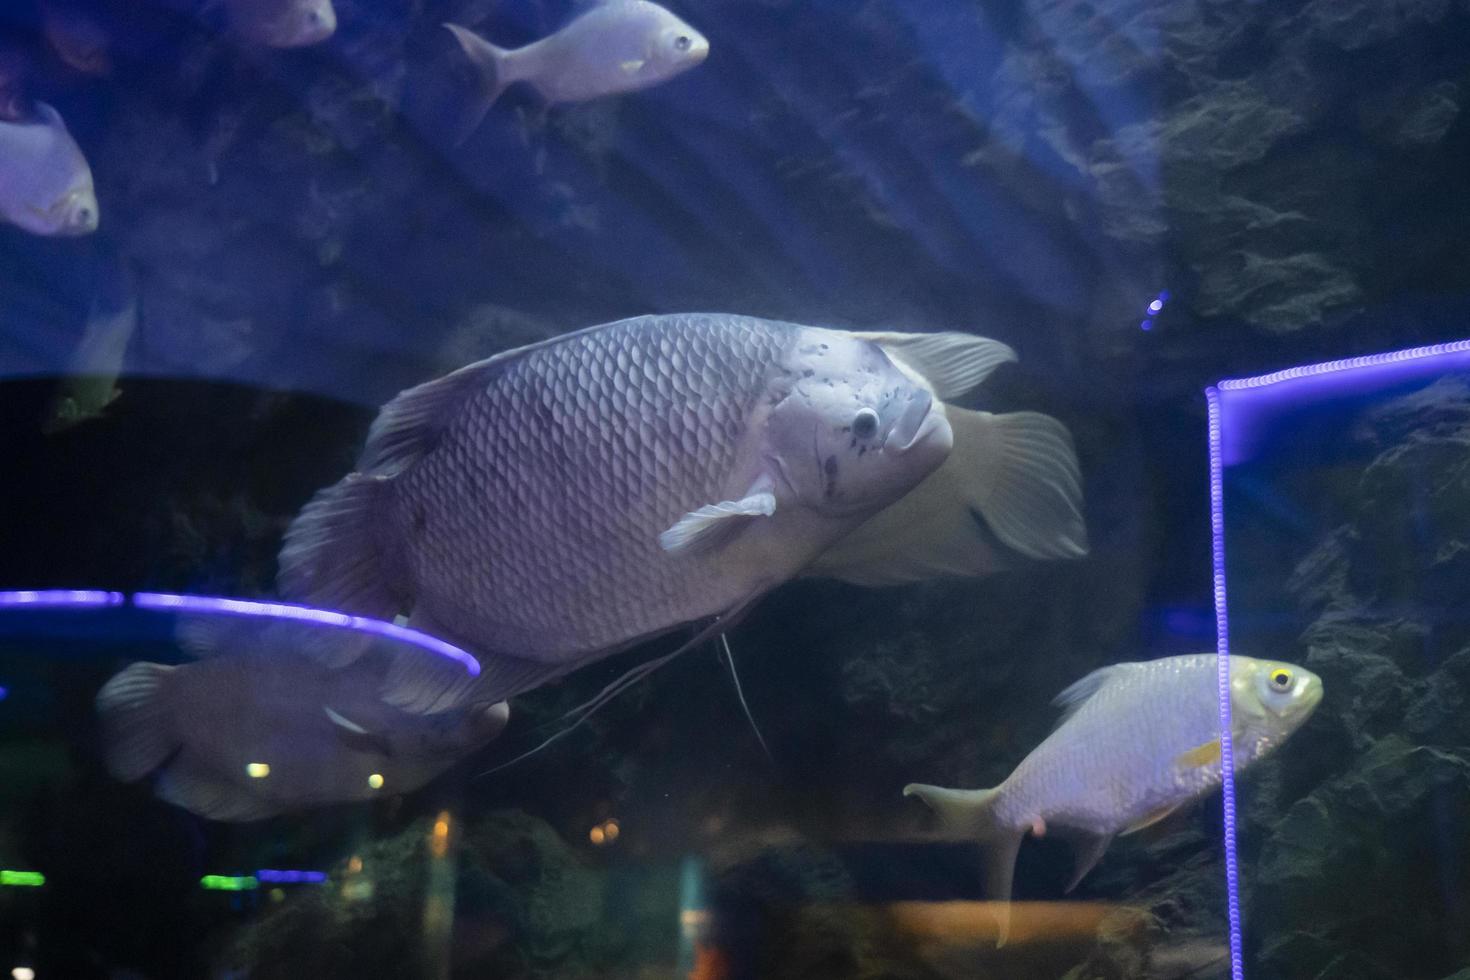 fishes in aquarium environment. Freshwater aquaria concept photo